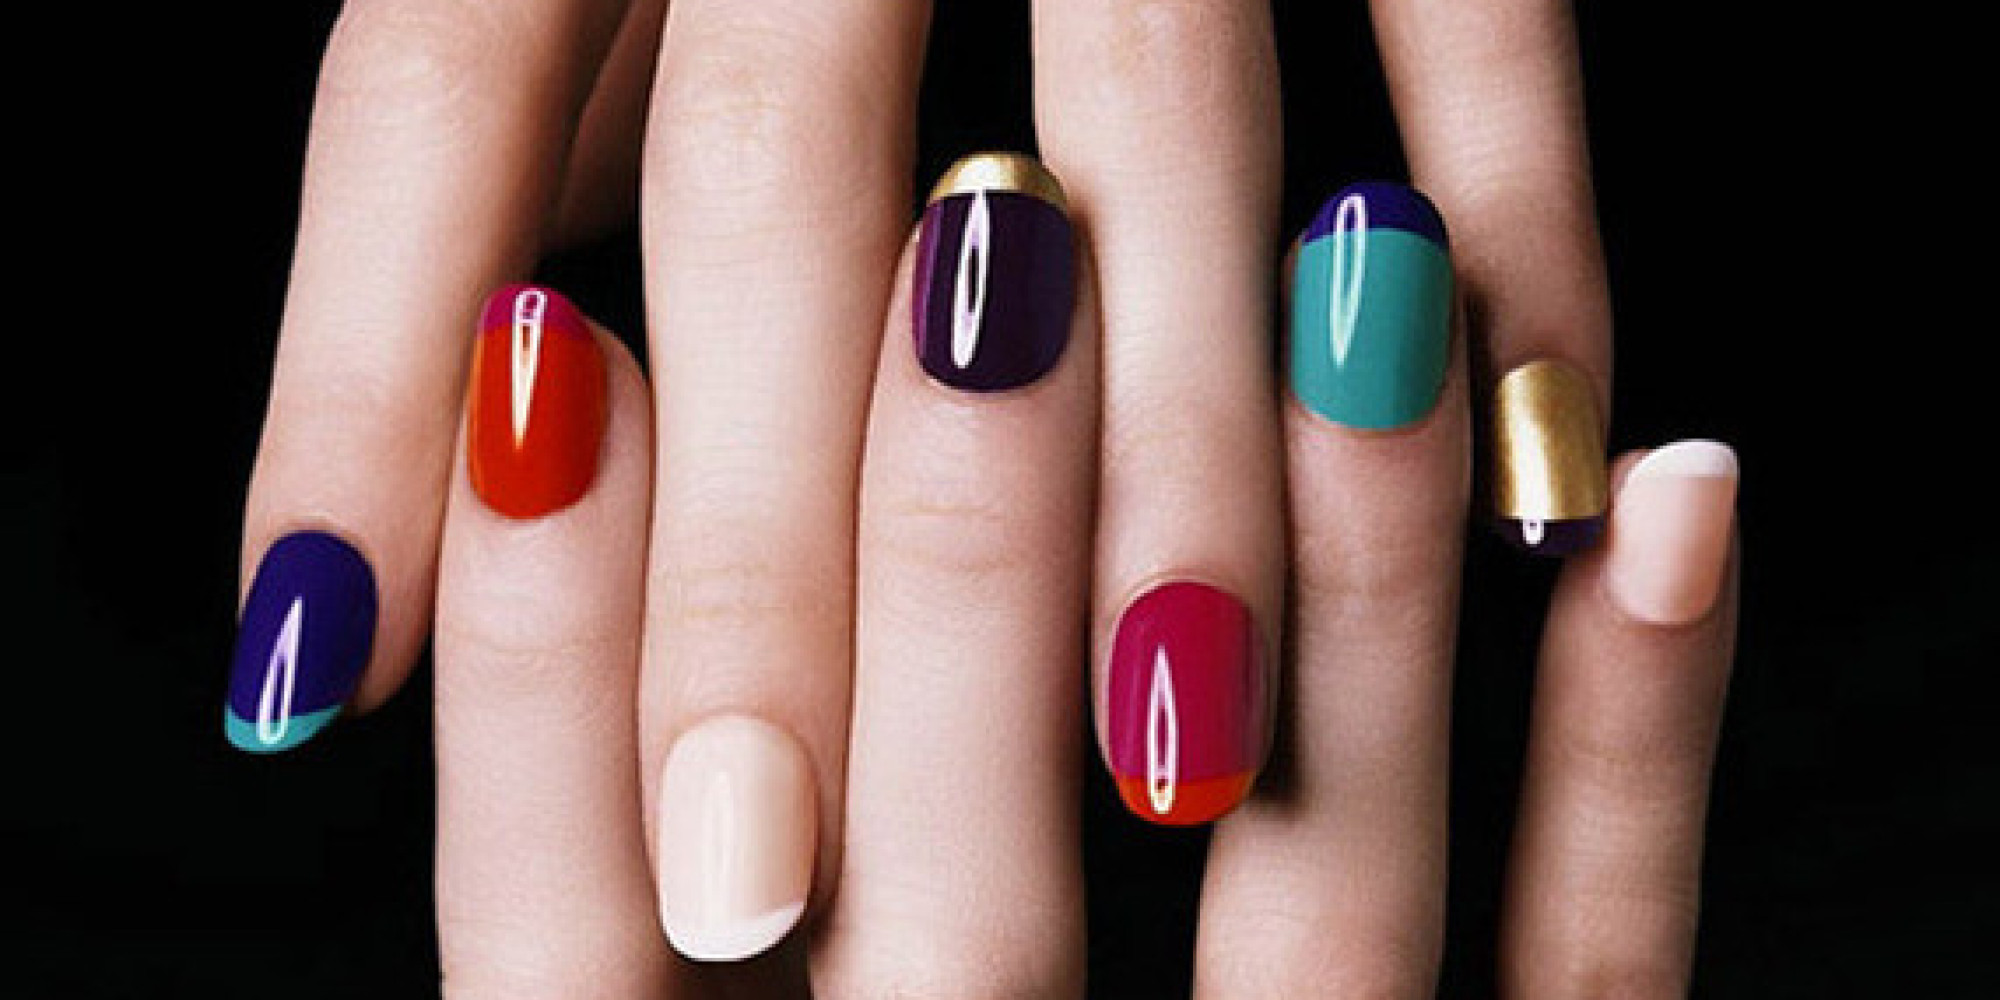 colored nail polish uses